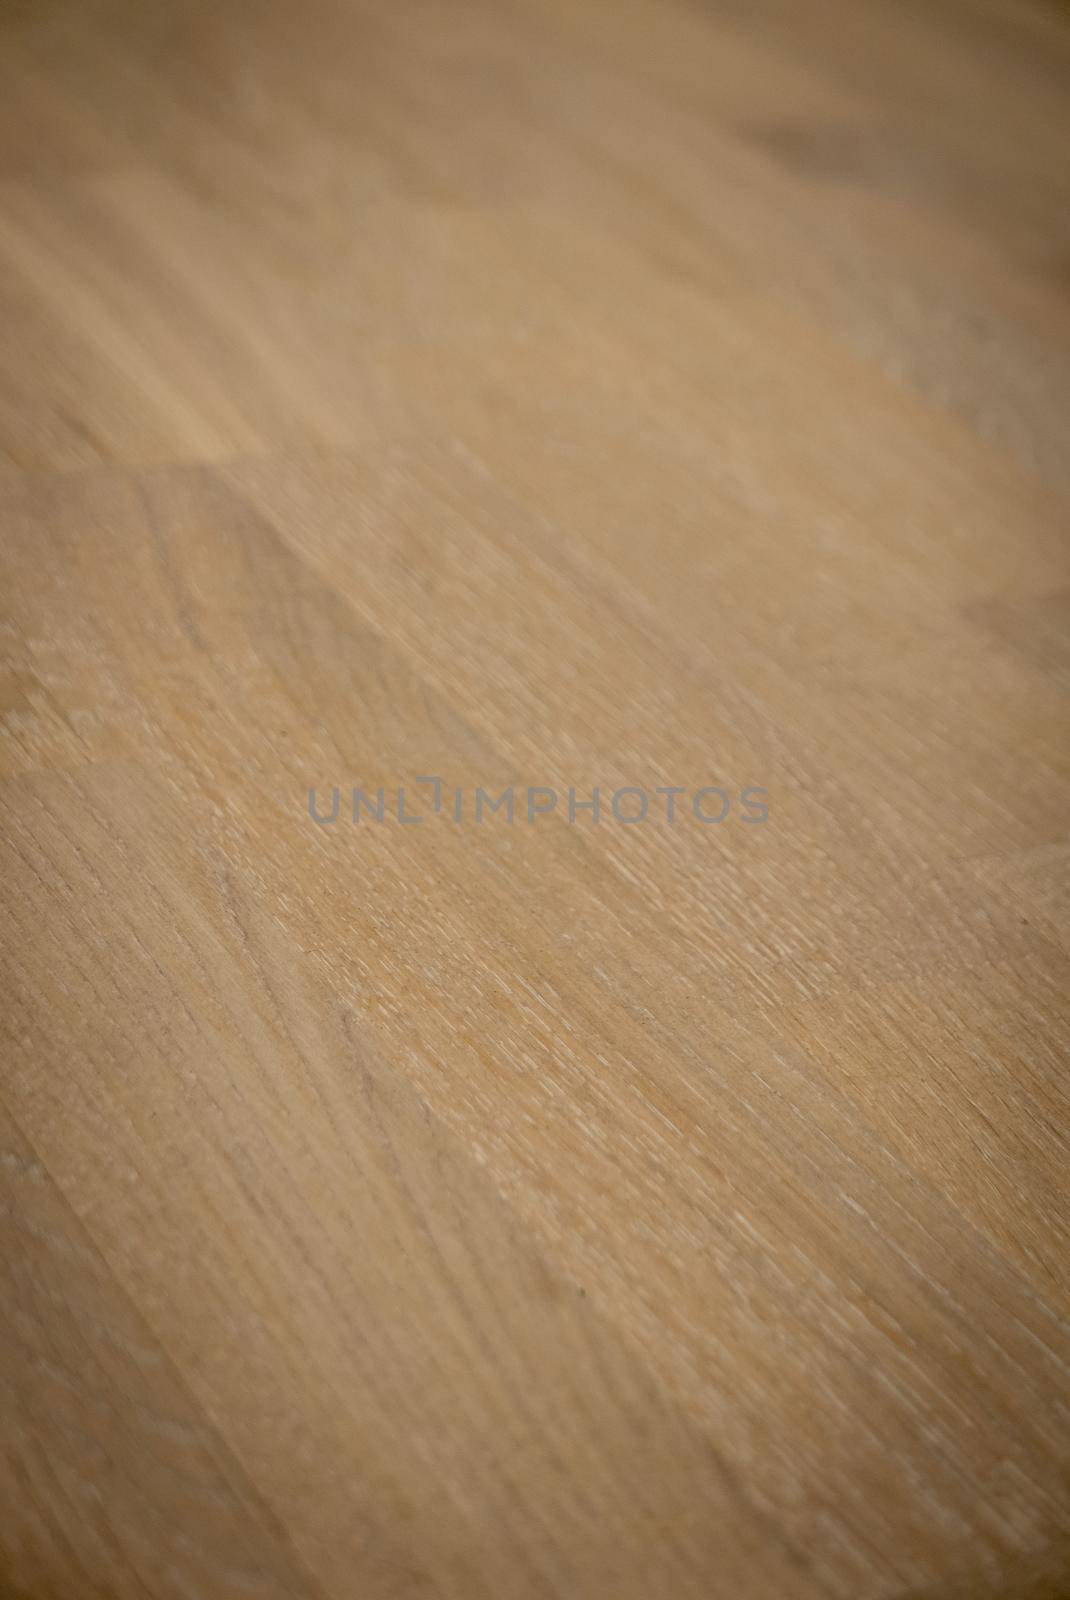 Dark brown wooden parquet floor texture background by sharafizdushanbe